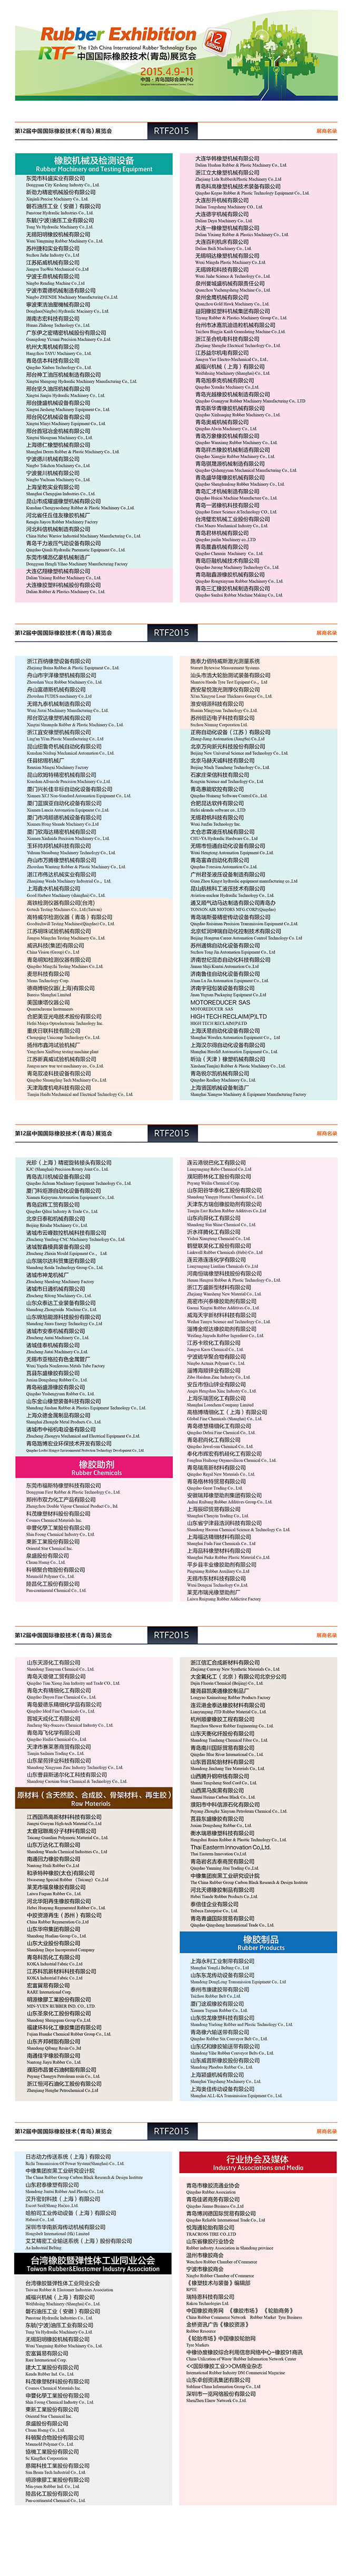 2015青岛橡胶展-展商名录.jpg